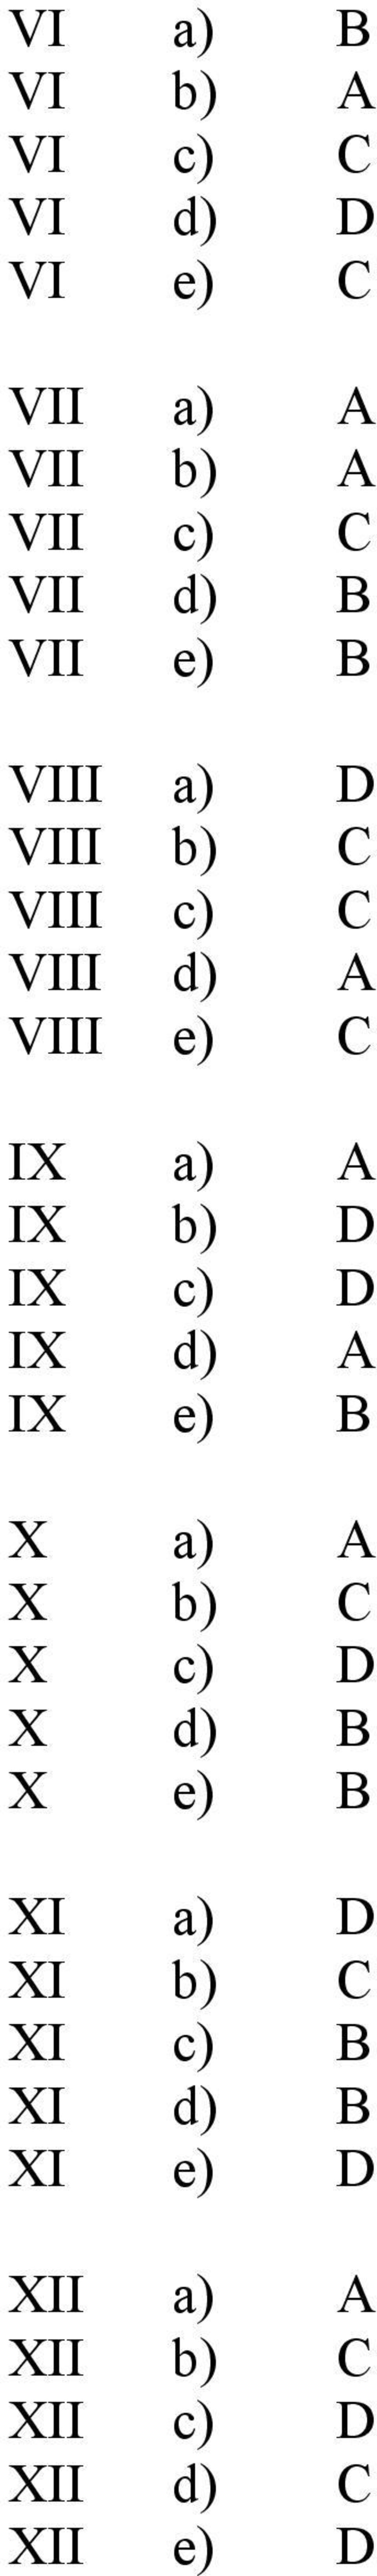 b) D IX c) D IX d) A IX e) B X a) A X b) C X c) D X d) B X e) B XI a) D